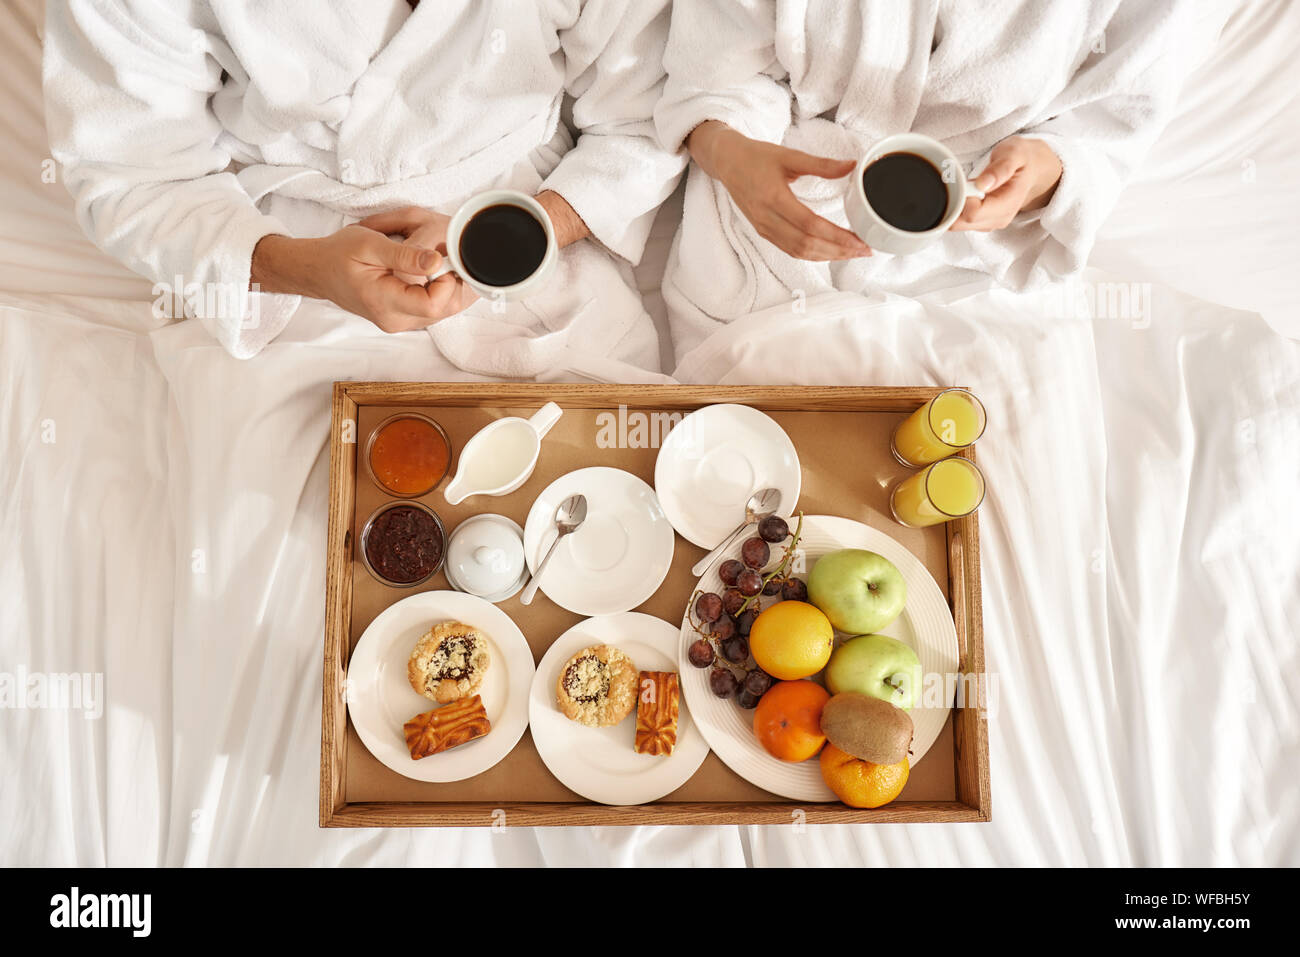 Blick von oben auf die paar tragen weiße Bademäntel im Bett lag. Das Frühstück ist auf das Fach, in das Bett. Zusammen reisen Konzept. Horizontale Schuß Stockfoto